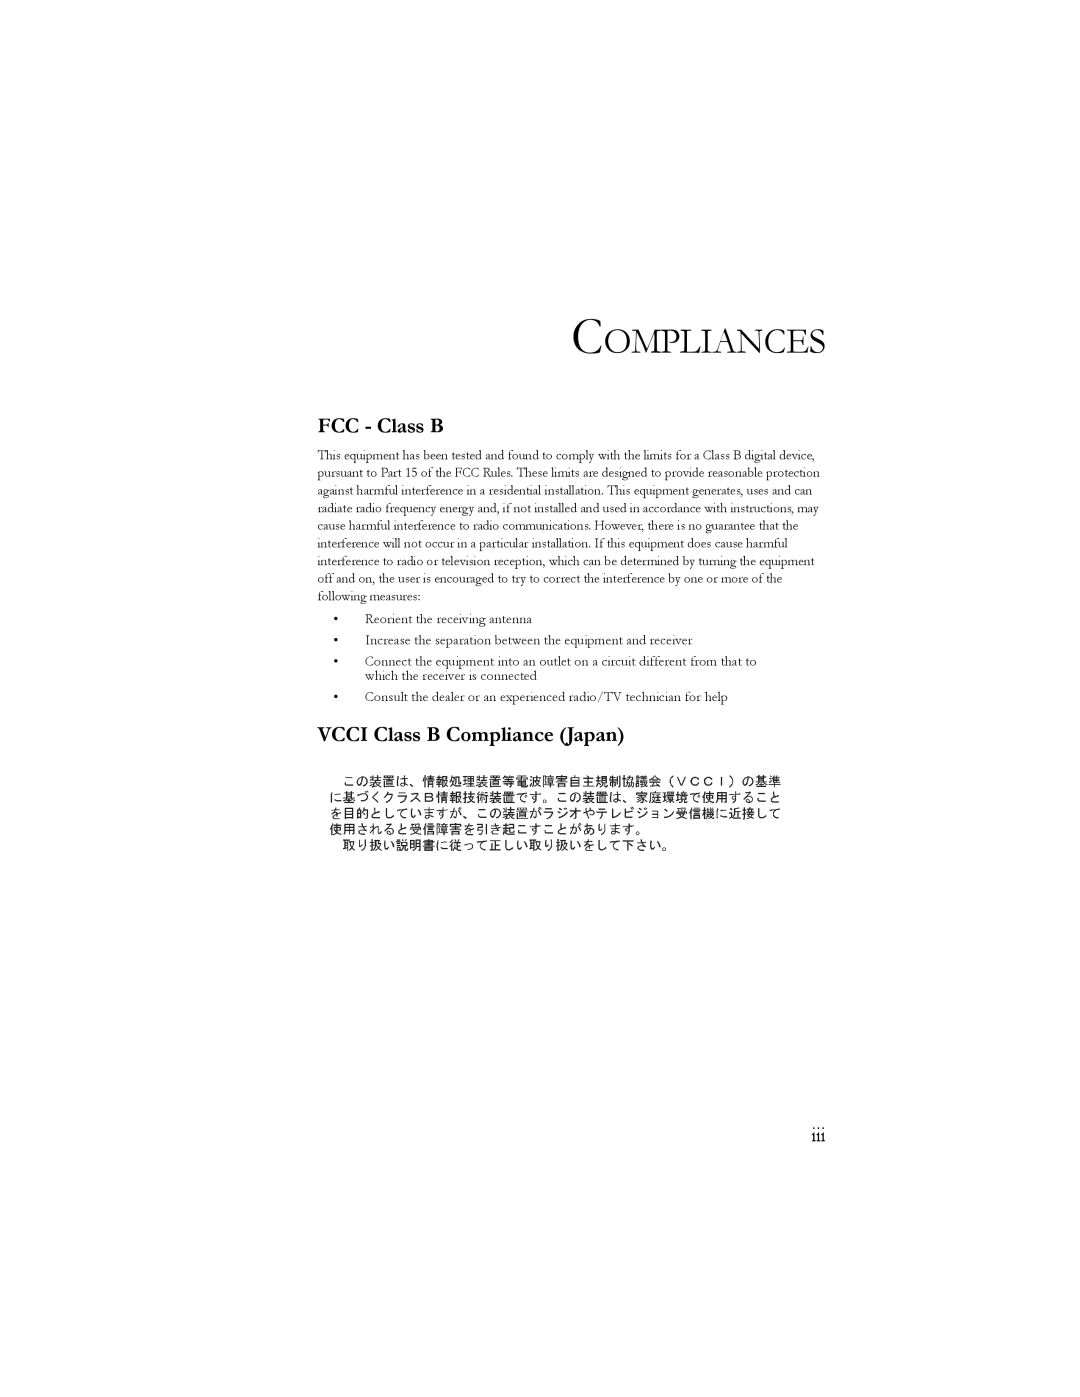 SMC Networks 10/100 Mbps manual Compliances, FCC - Class B, VCCI Class B Compliance Japan 